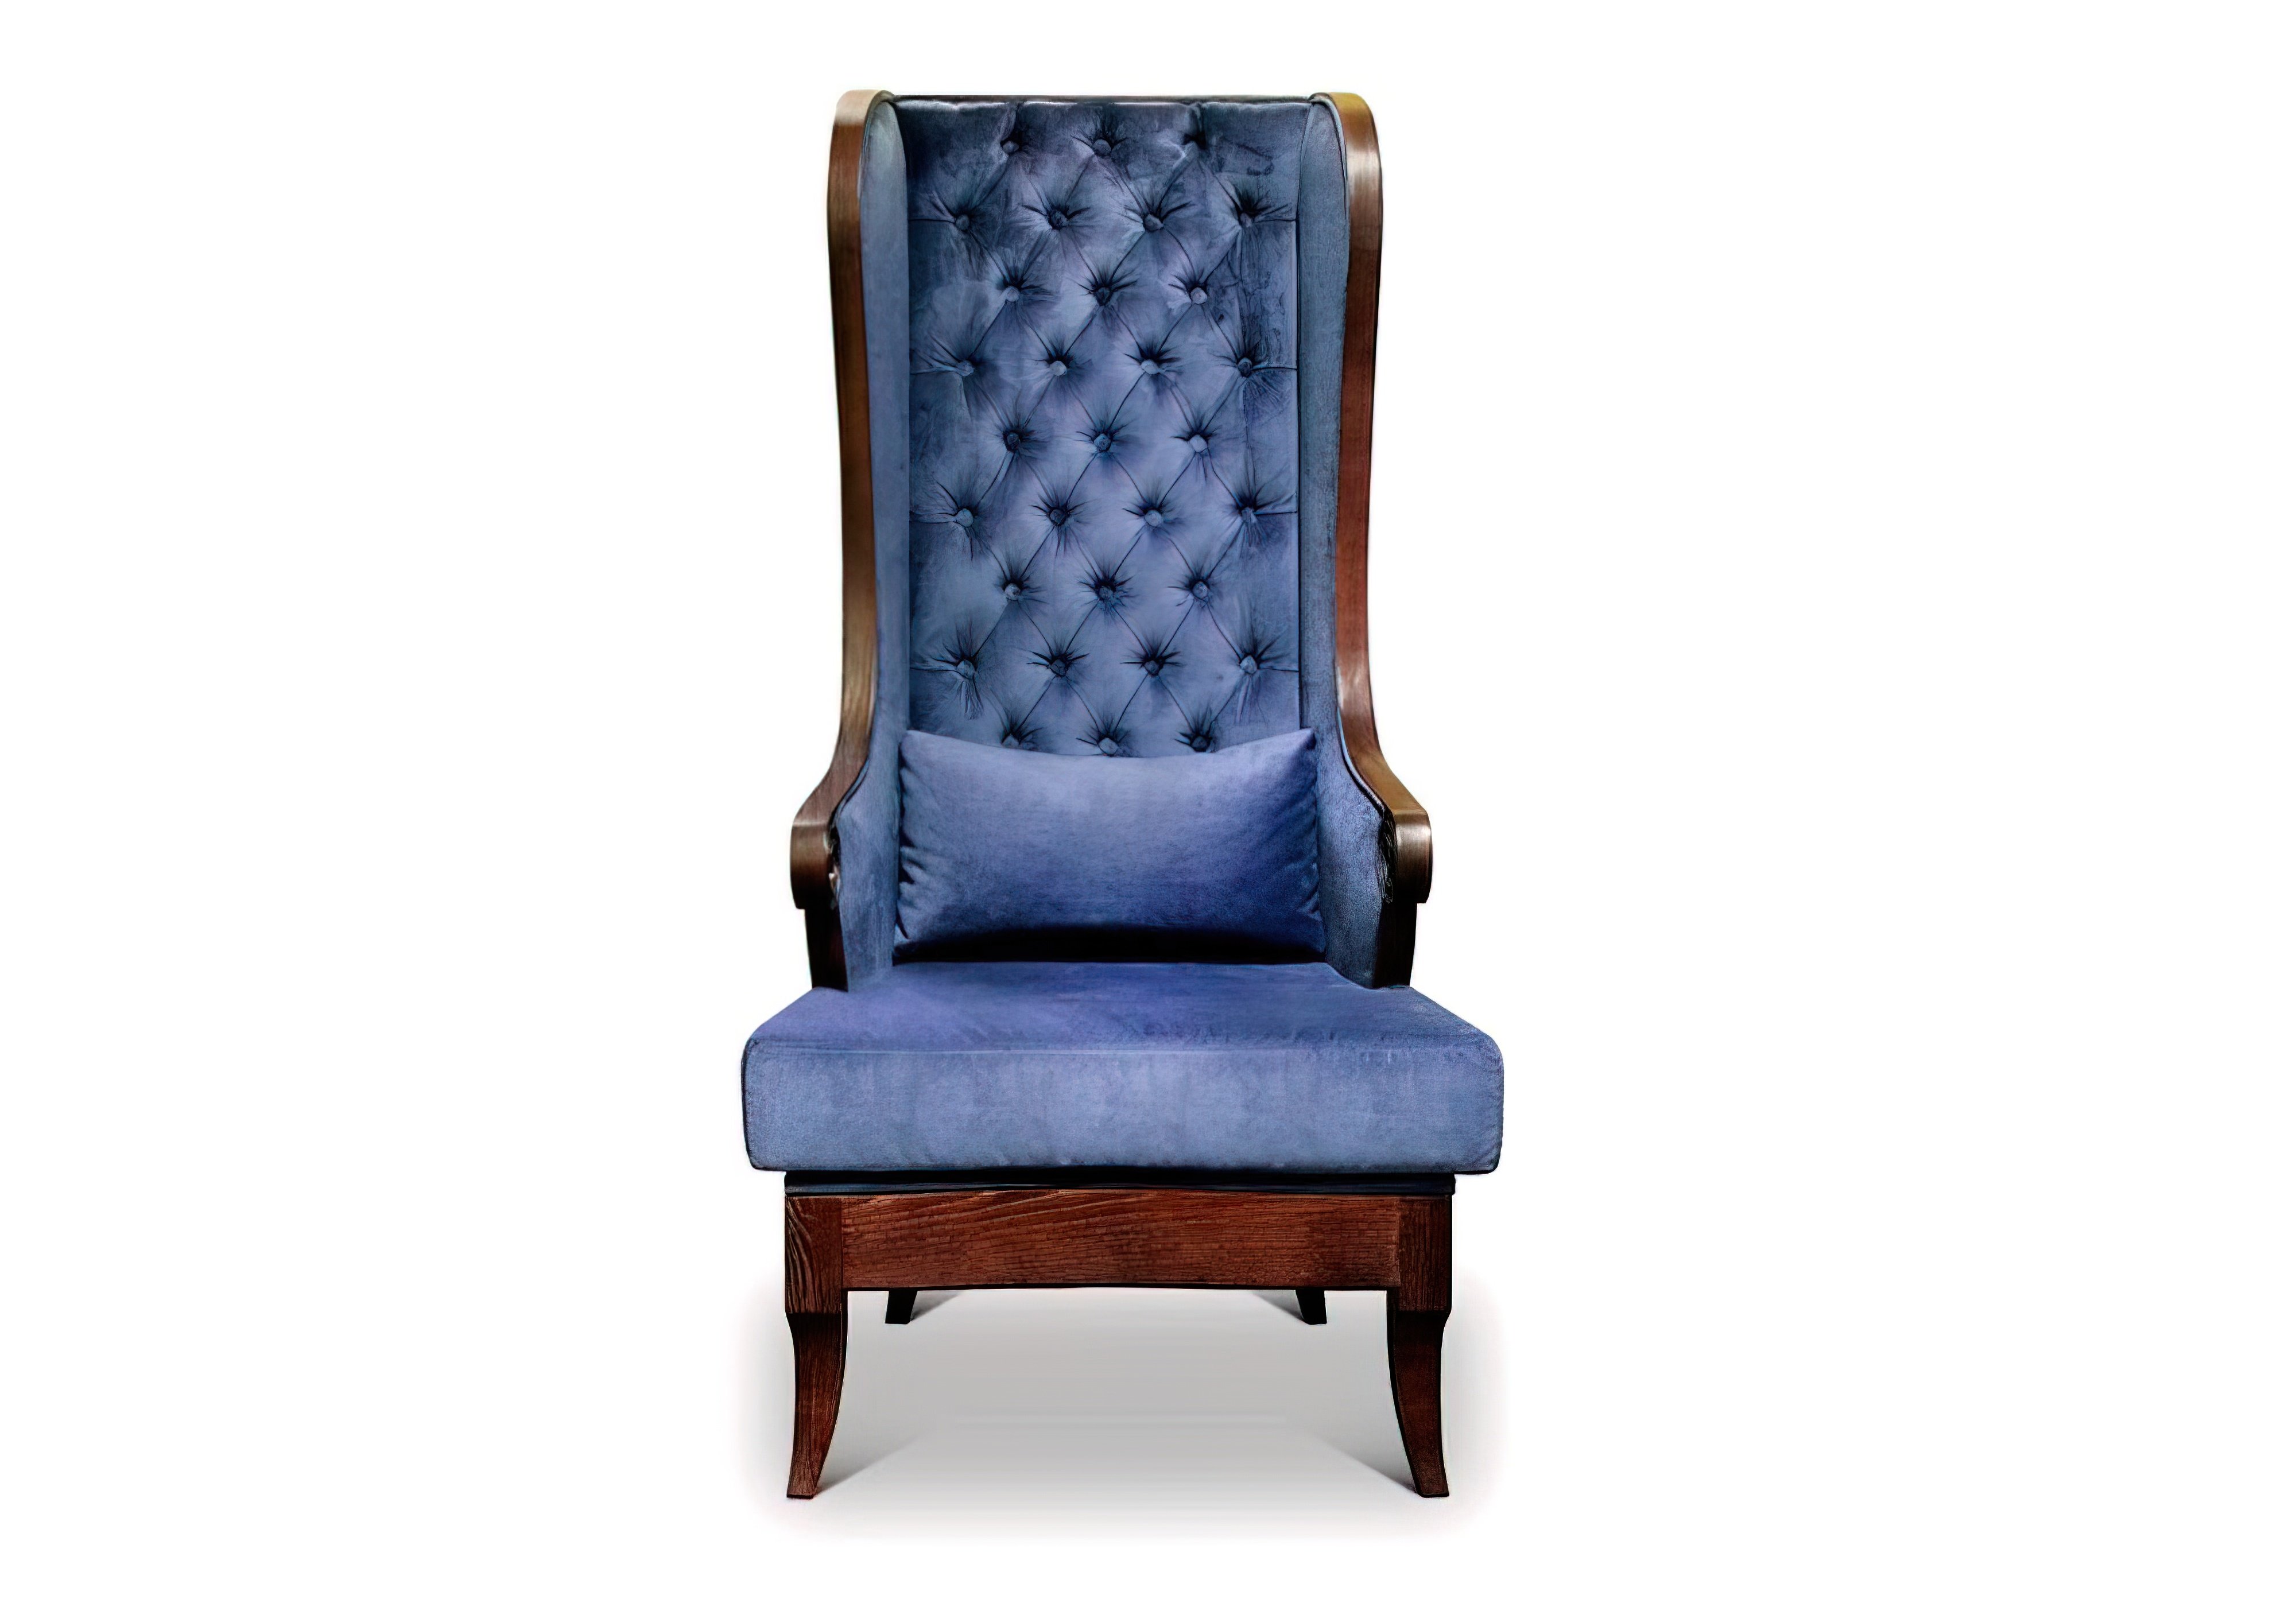  Недорого Мягкие кресла Кресло "Royal" Китасс